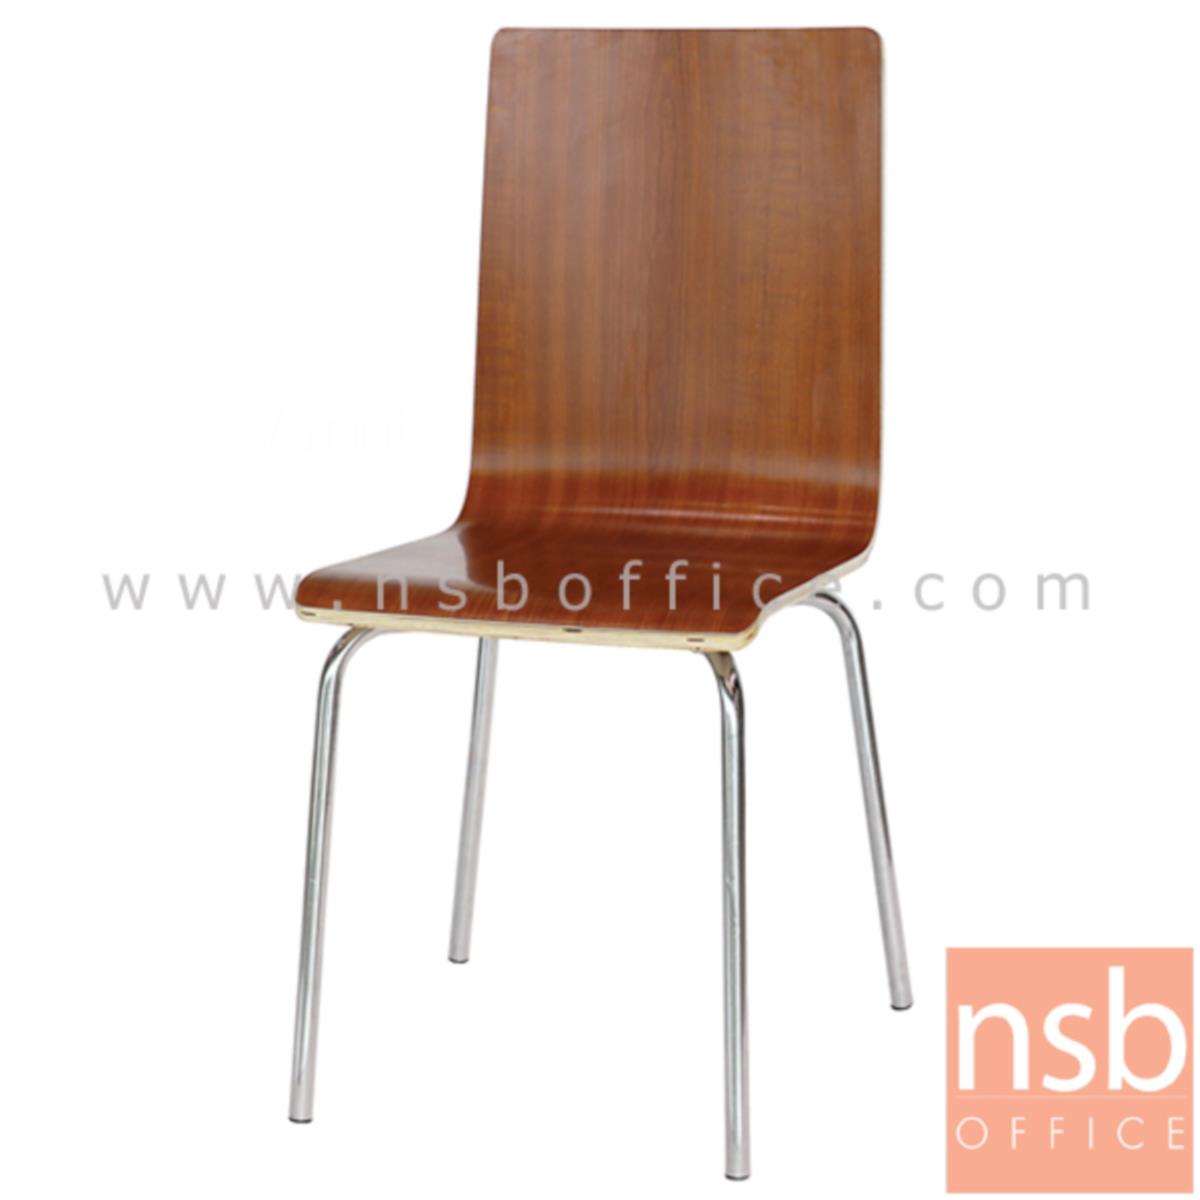 B20A068:เก้าอี้อเนกประสงค์ไม้ดัด รุ่น Fallon (แฟลลอน)  ขาเหล็กชุบโครเมี่ยม